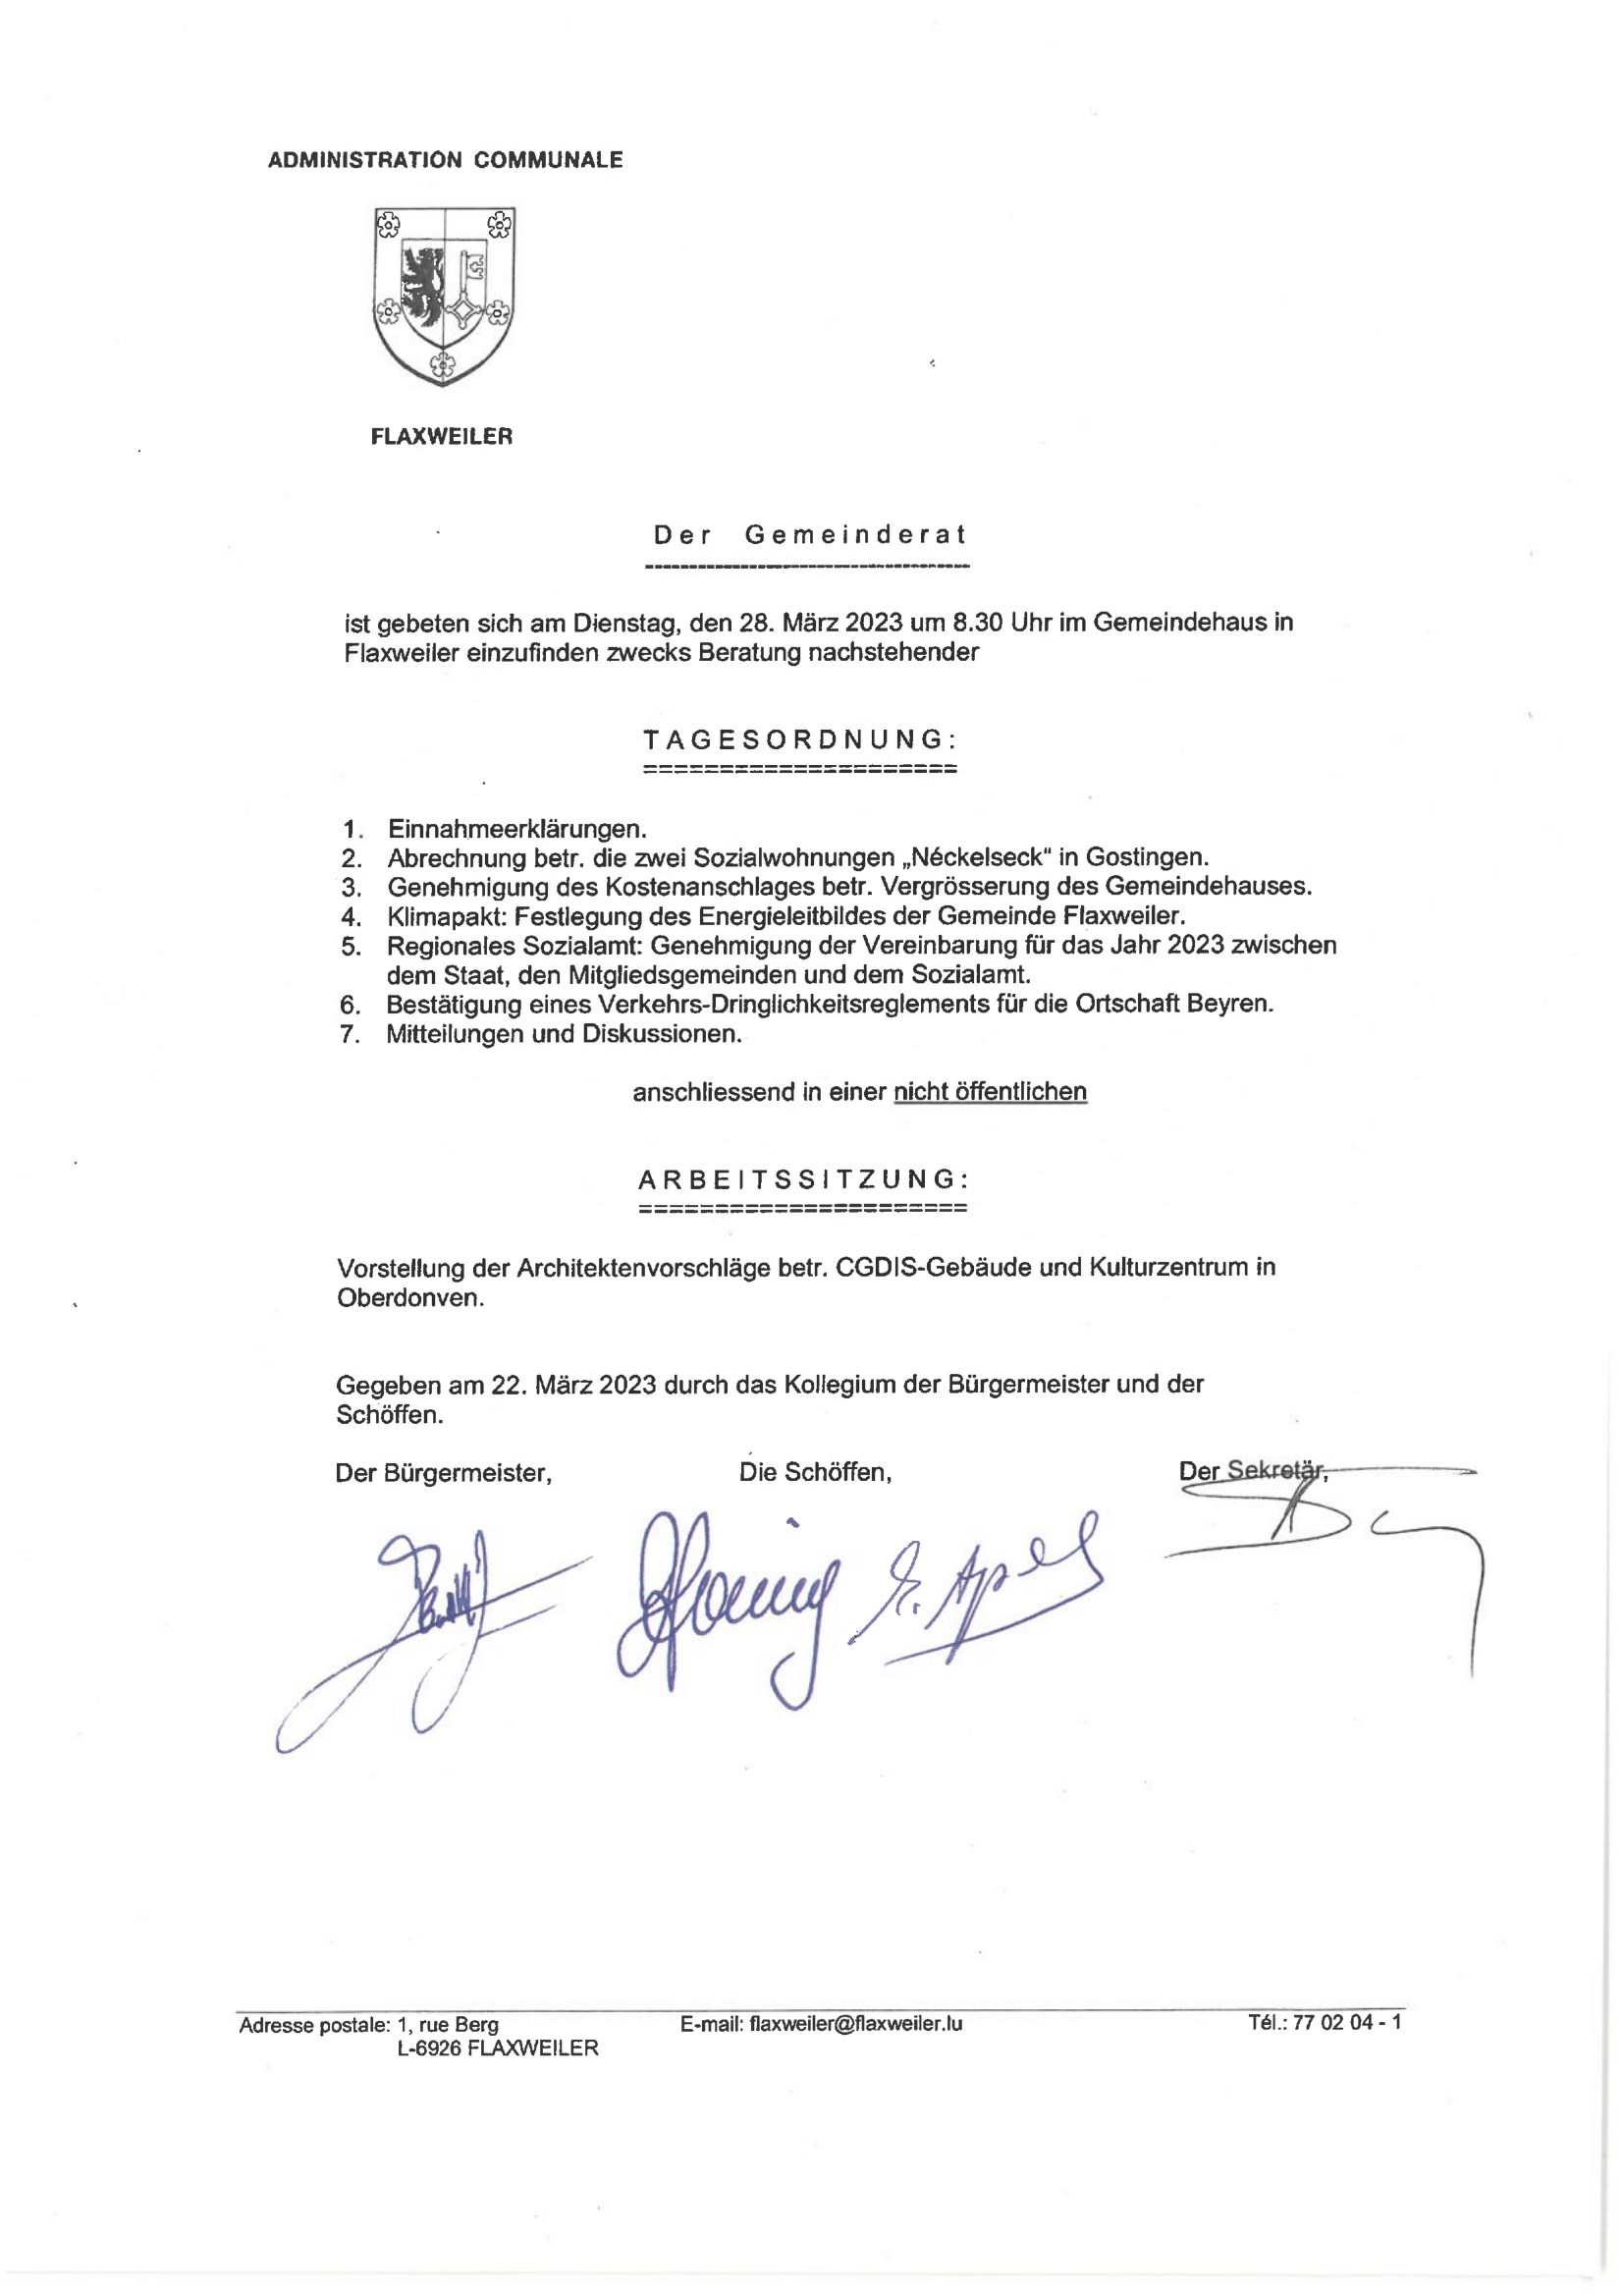 Tagesordnung der Gemeinderatssitzung – 28.03.23